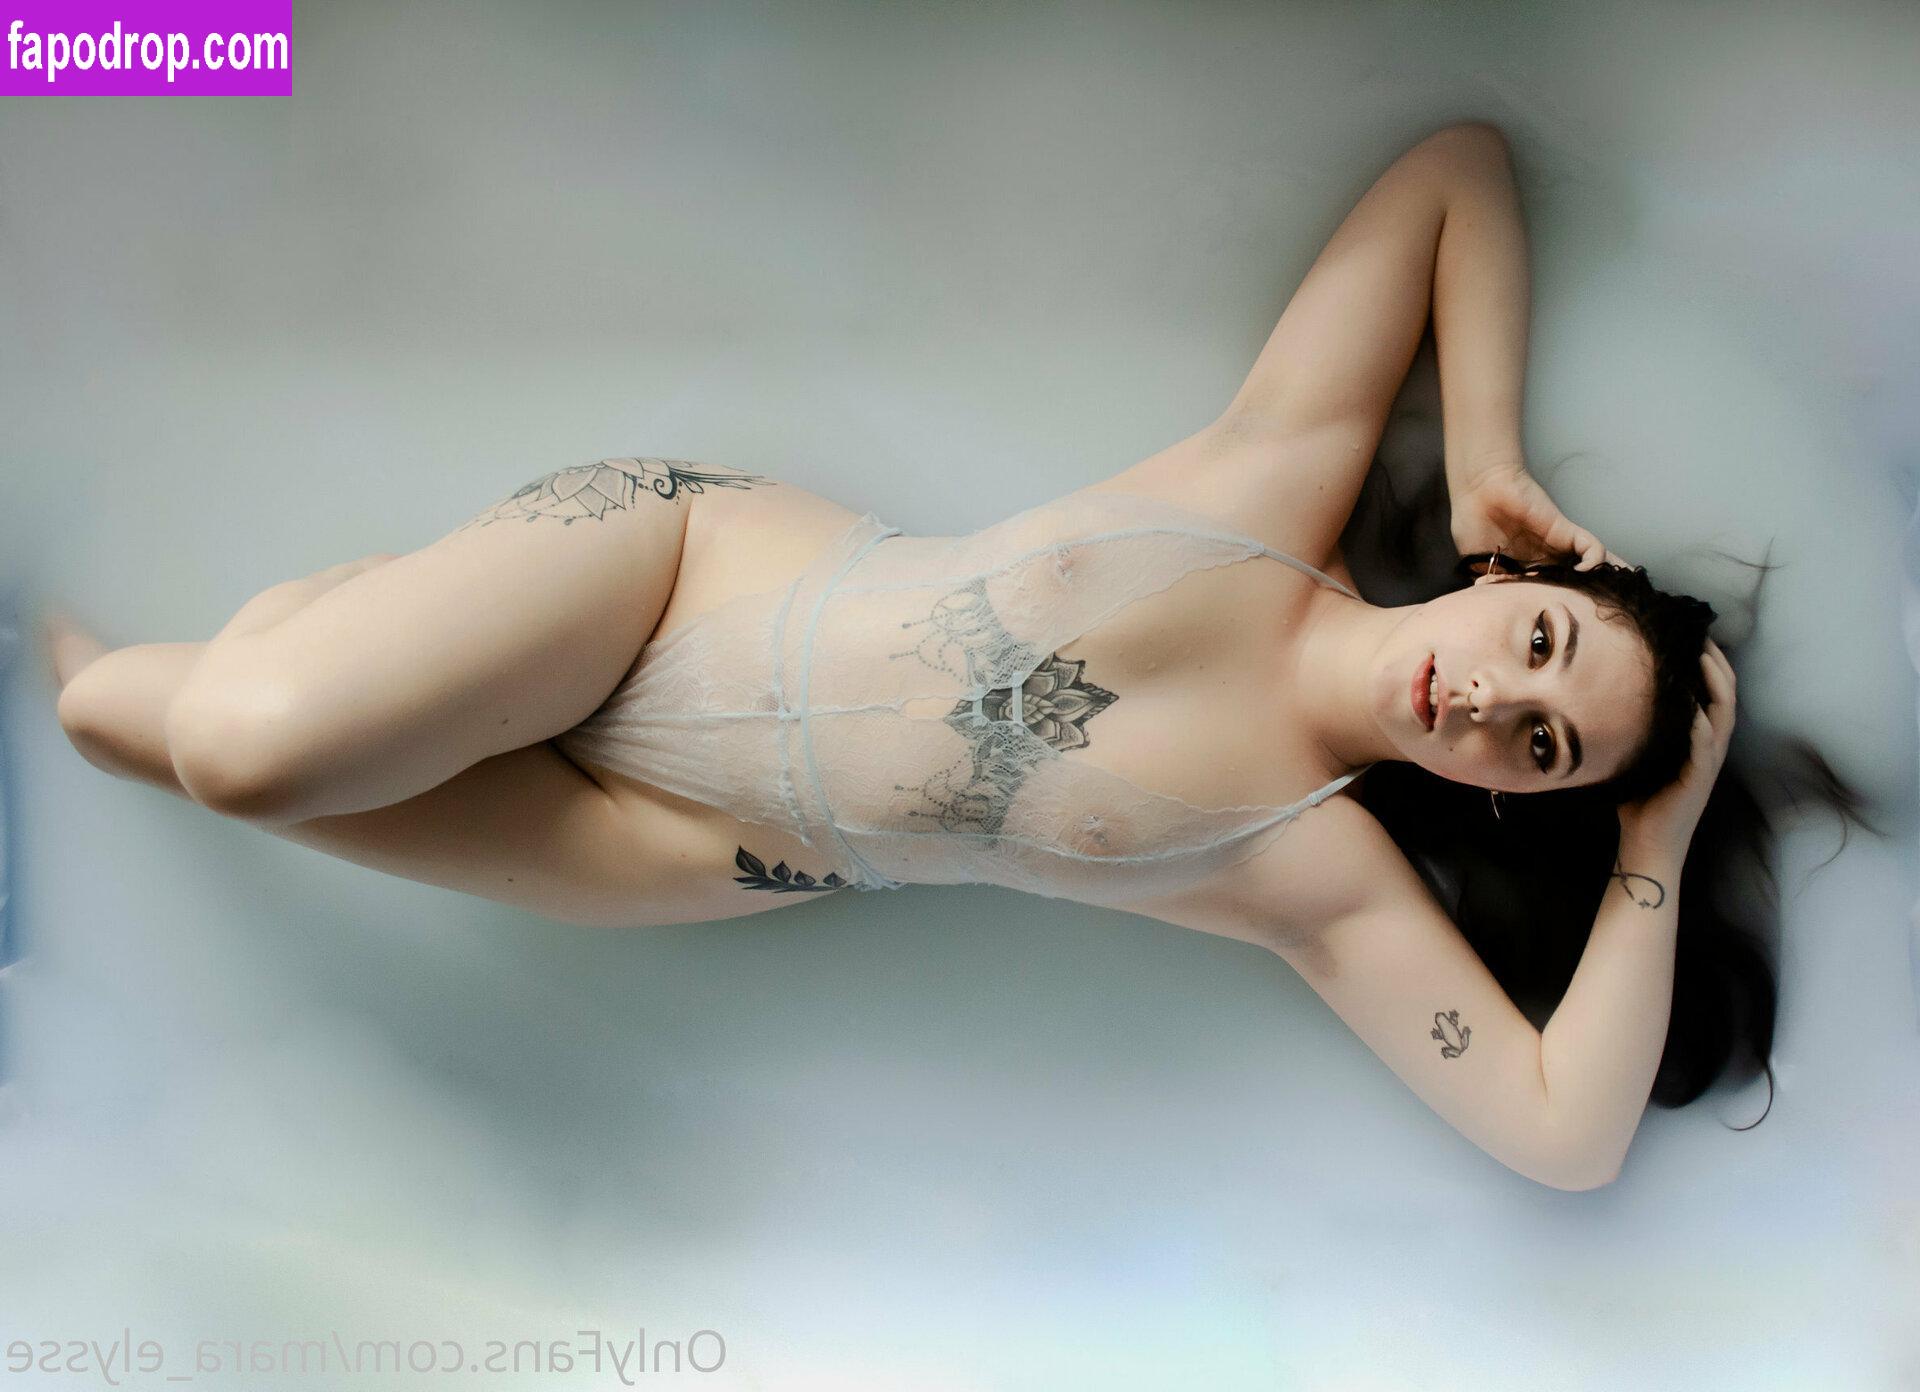 mara_elysse / mara_elyse leak of nude photo #0063 from OnlyFans or Patreon